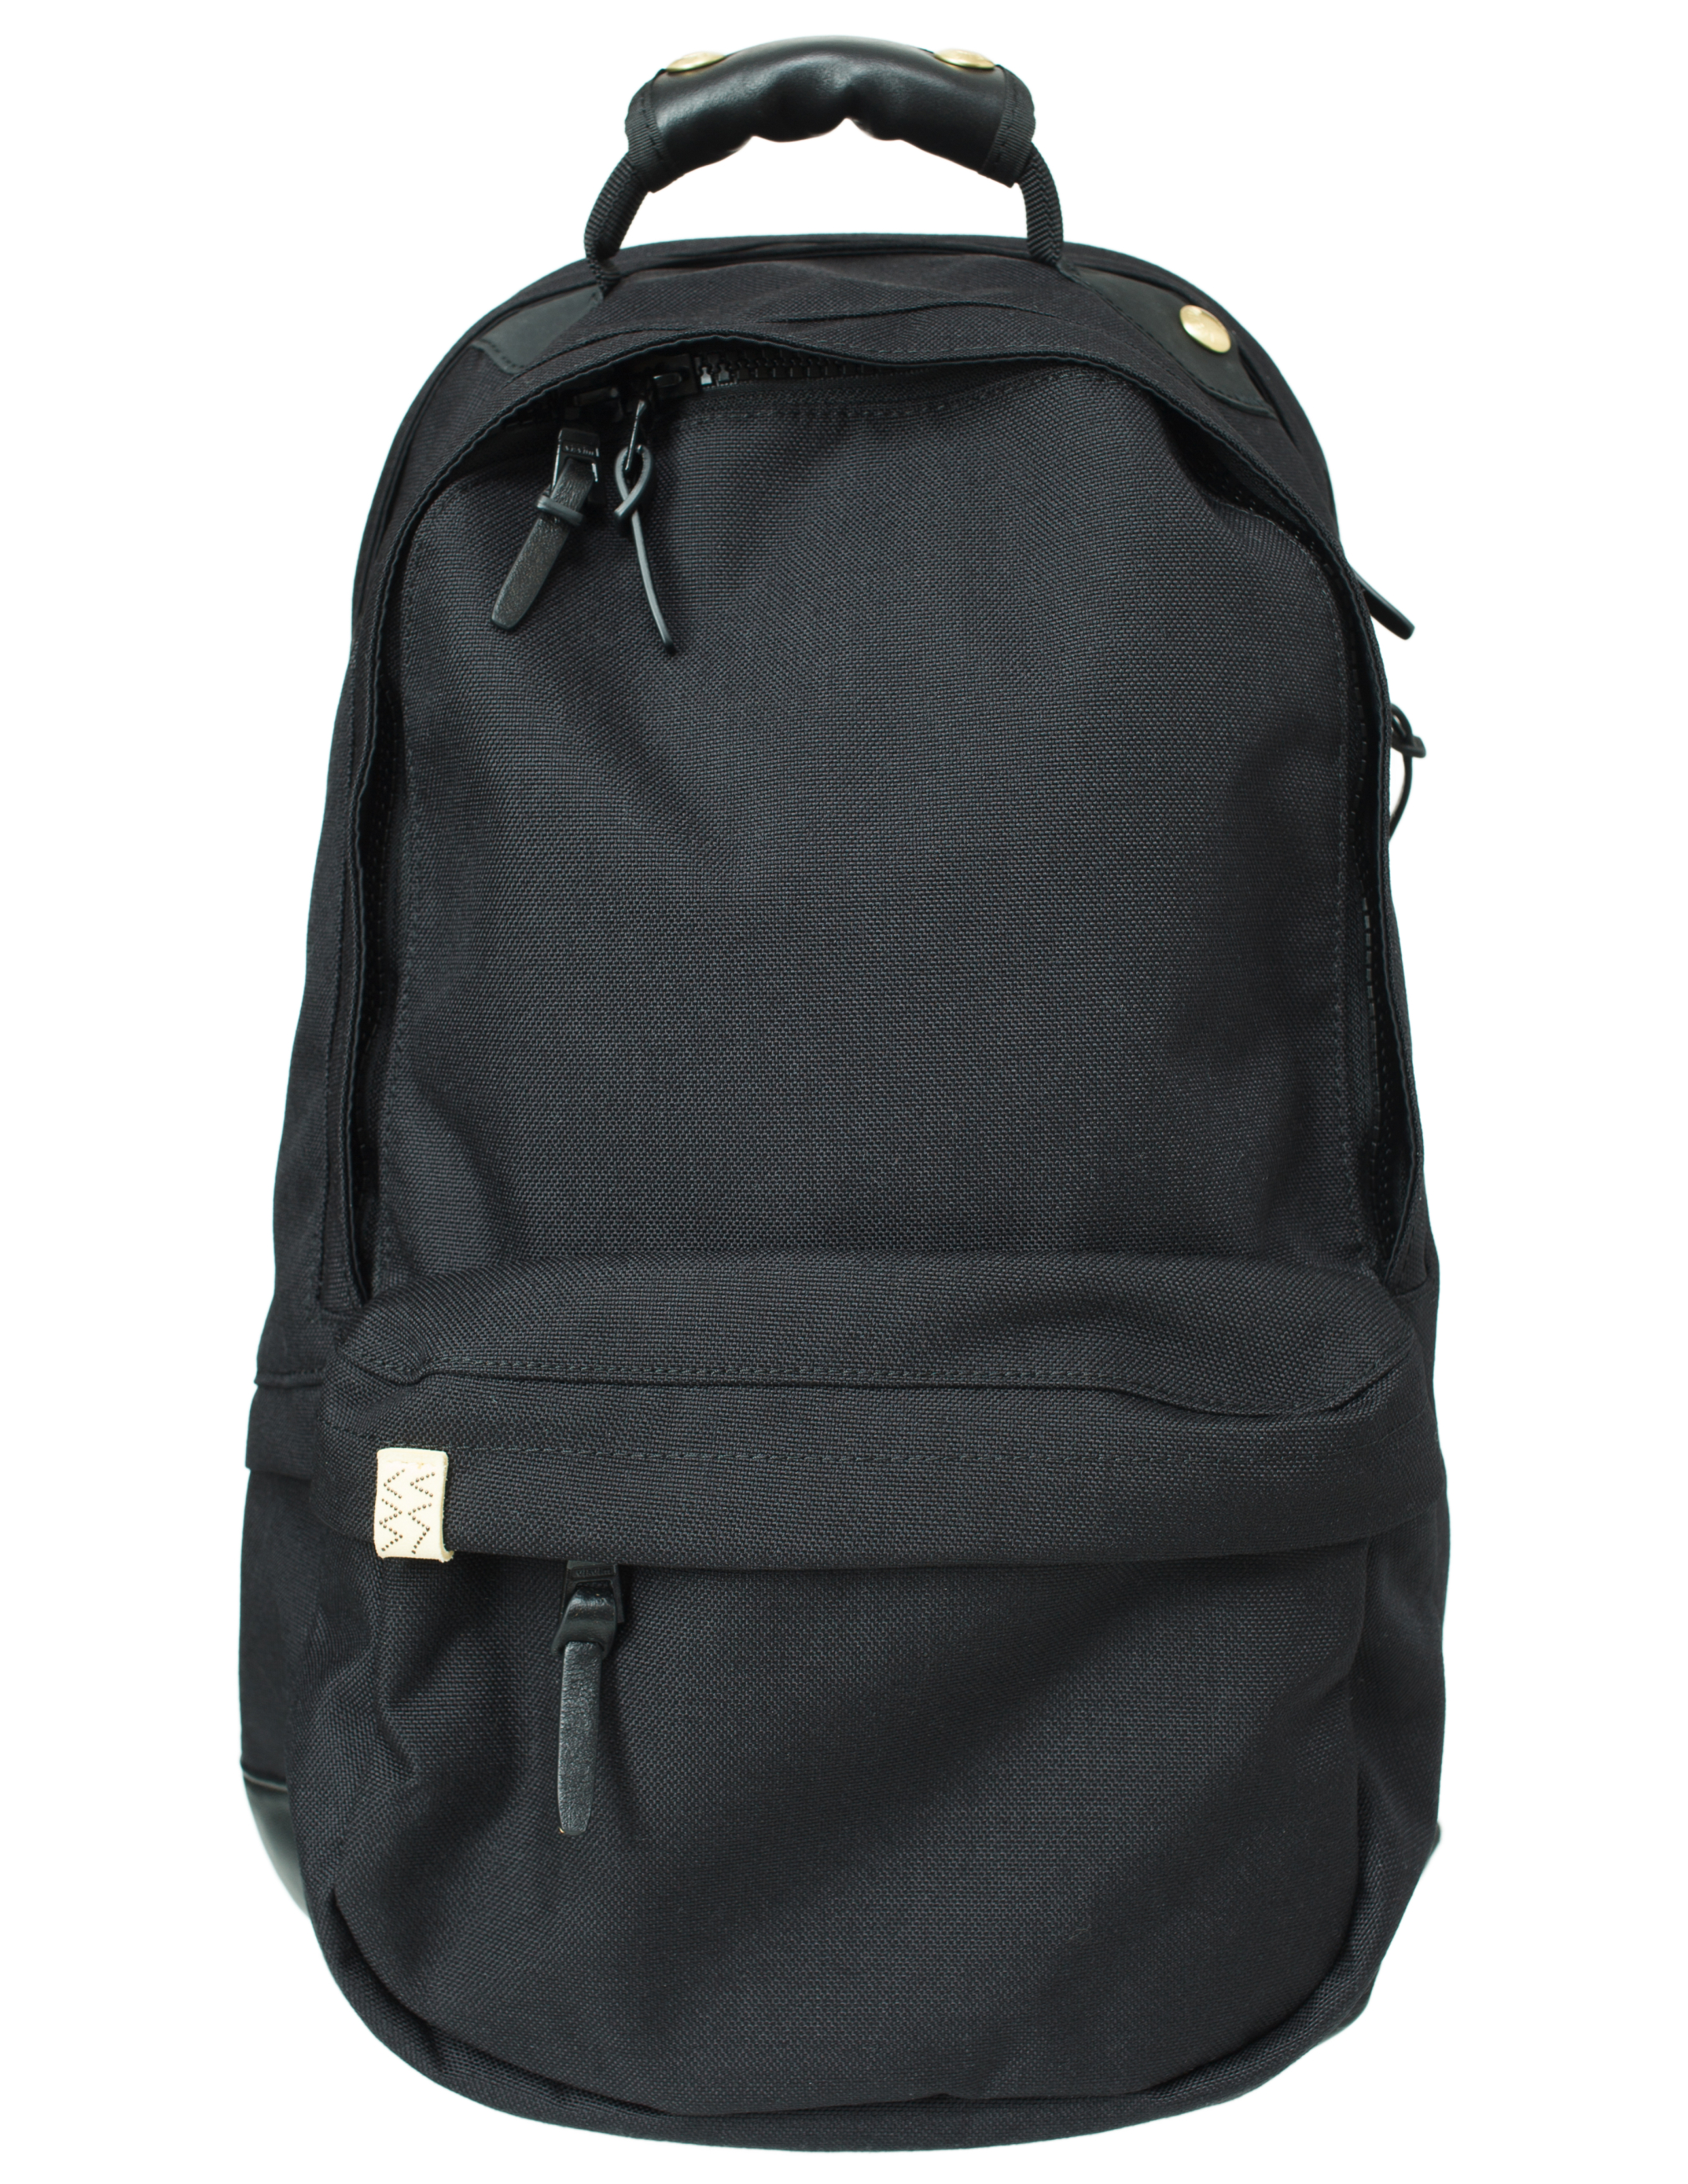 Комбинированный рюкзак Cordura 22L visvim 0123103003032/BLACK, размер One Size